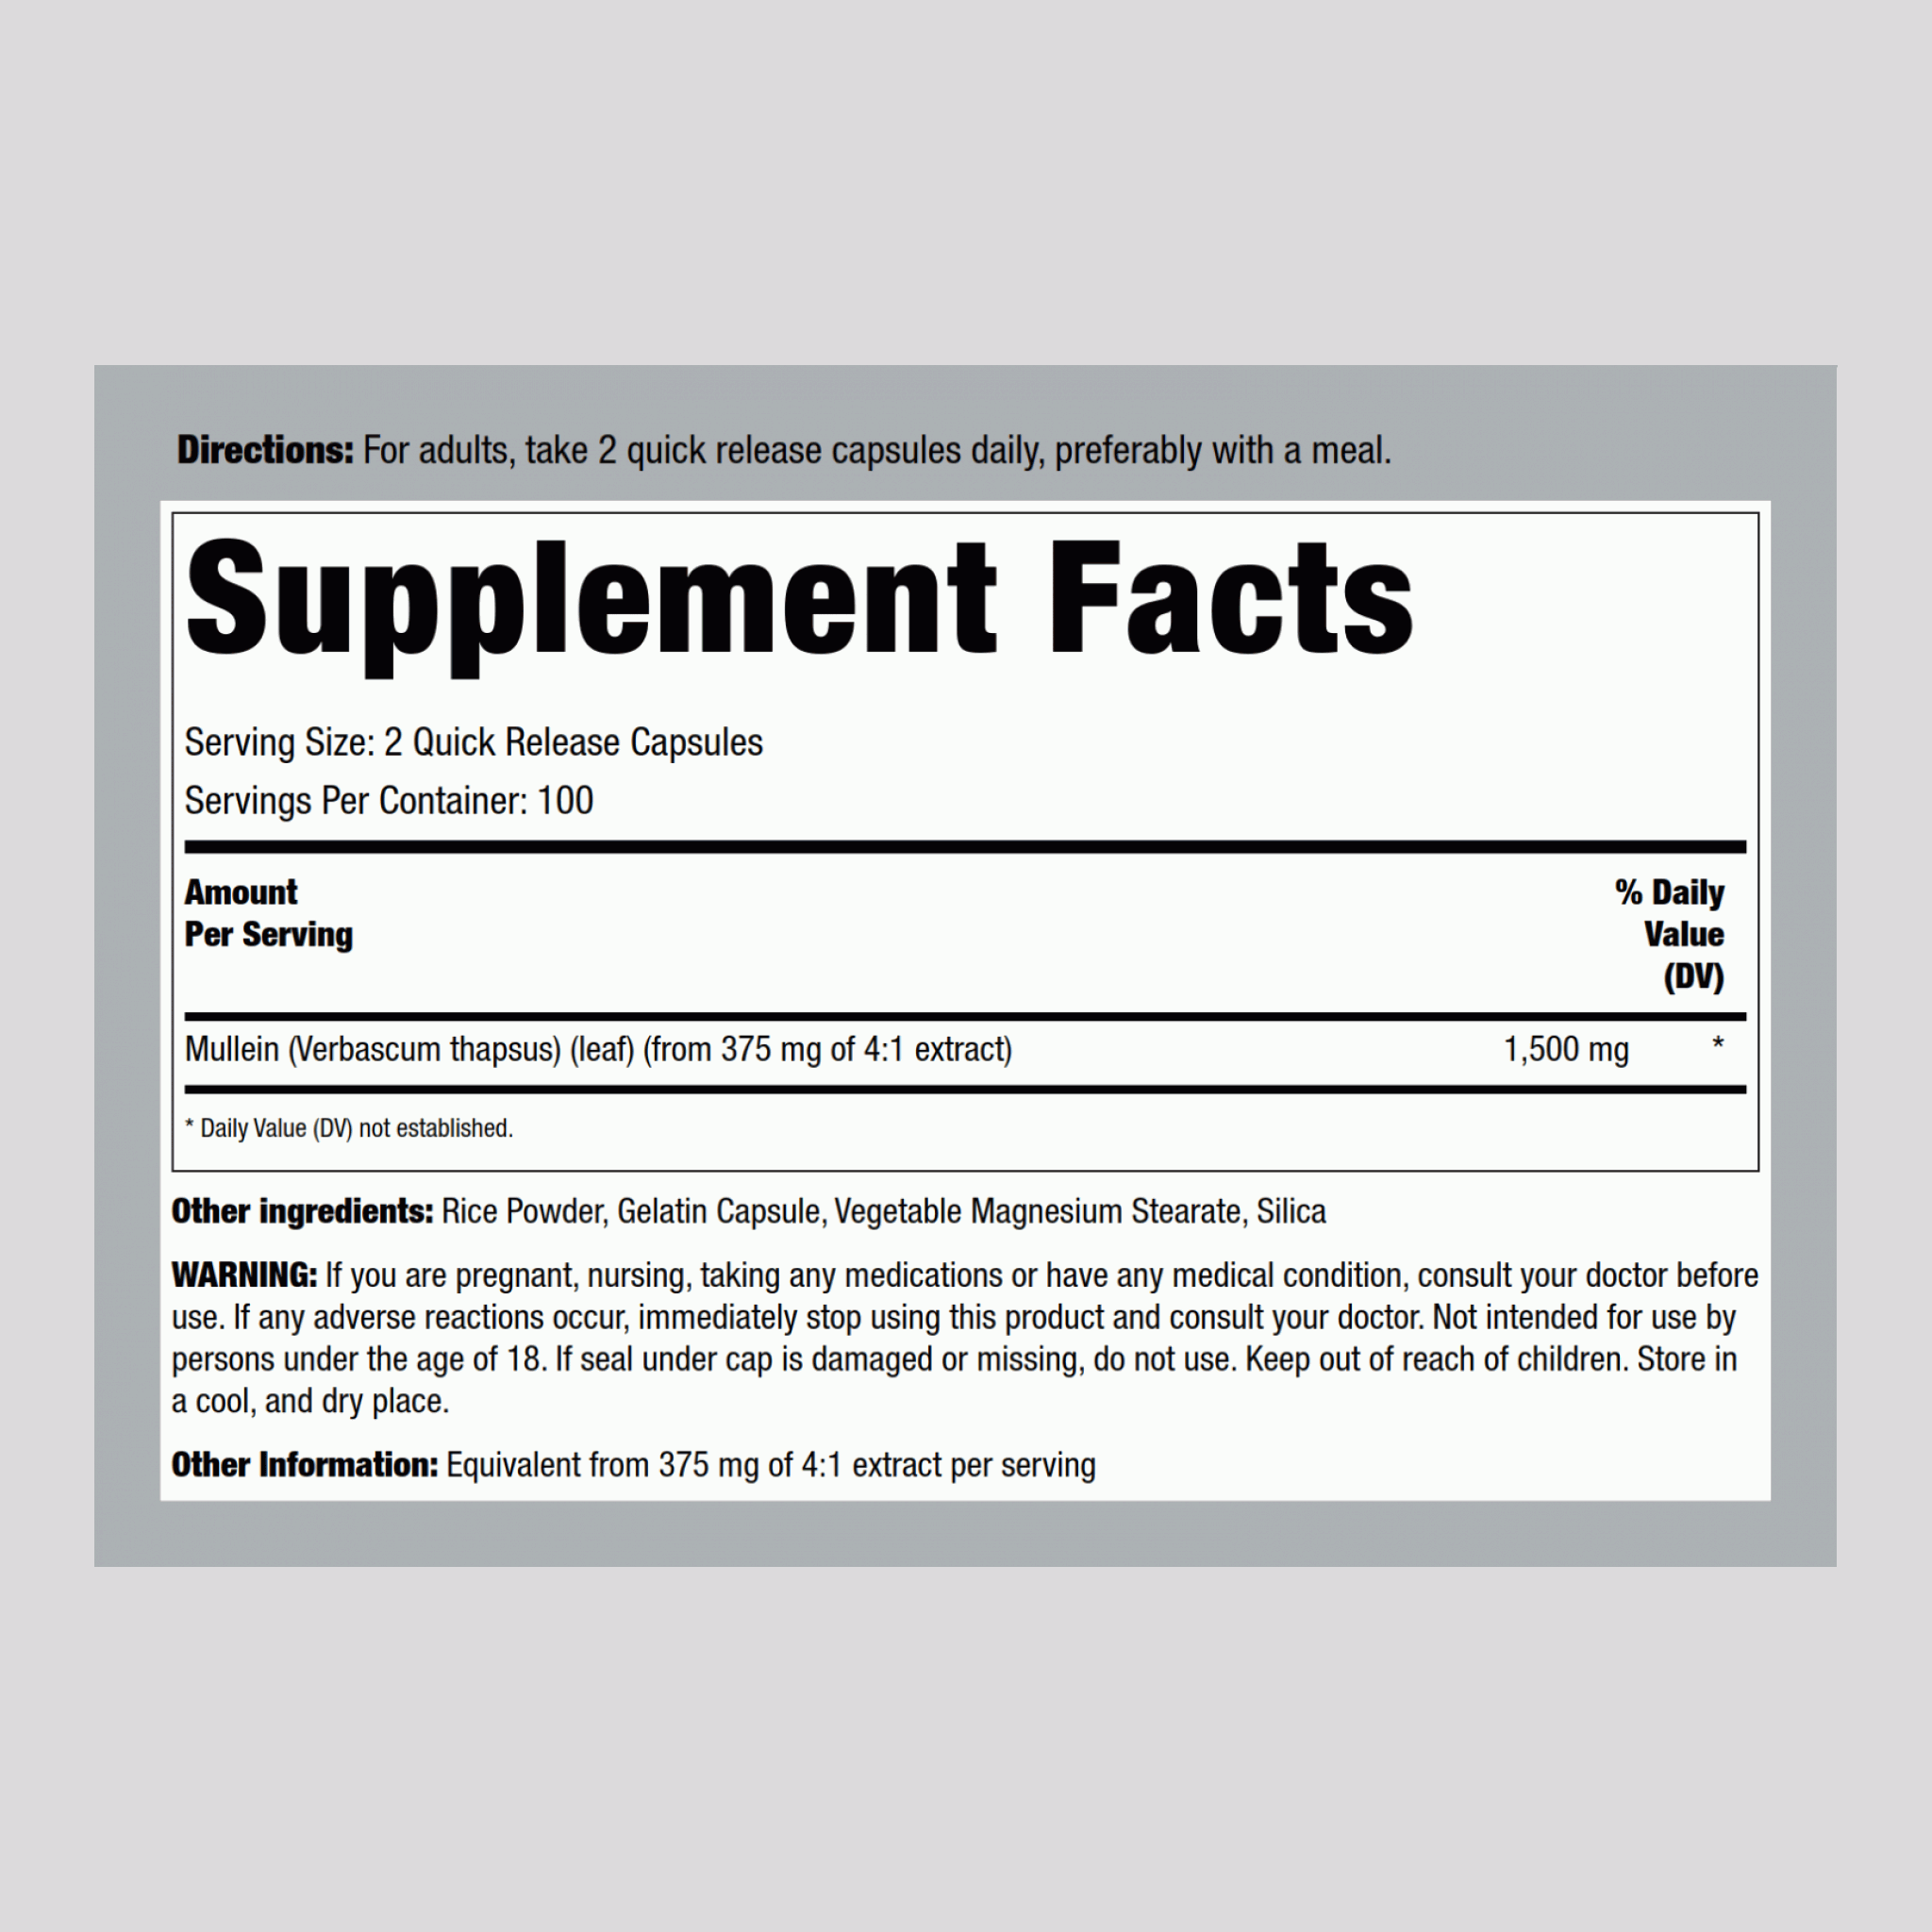 Feuille de molène (Gordolobo),  1500 mg (par portion) 200 Gélules à libération rapide 2 Bouteilles